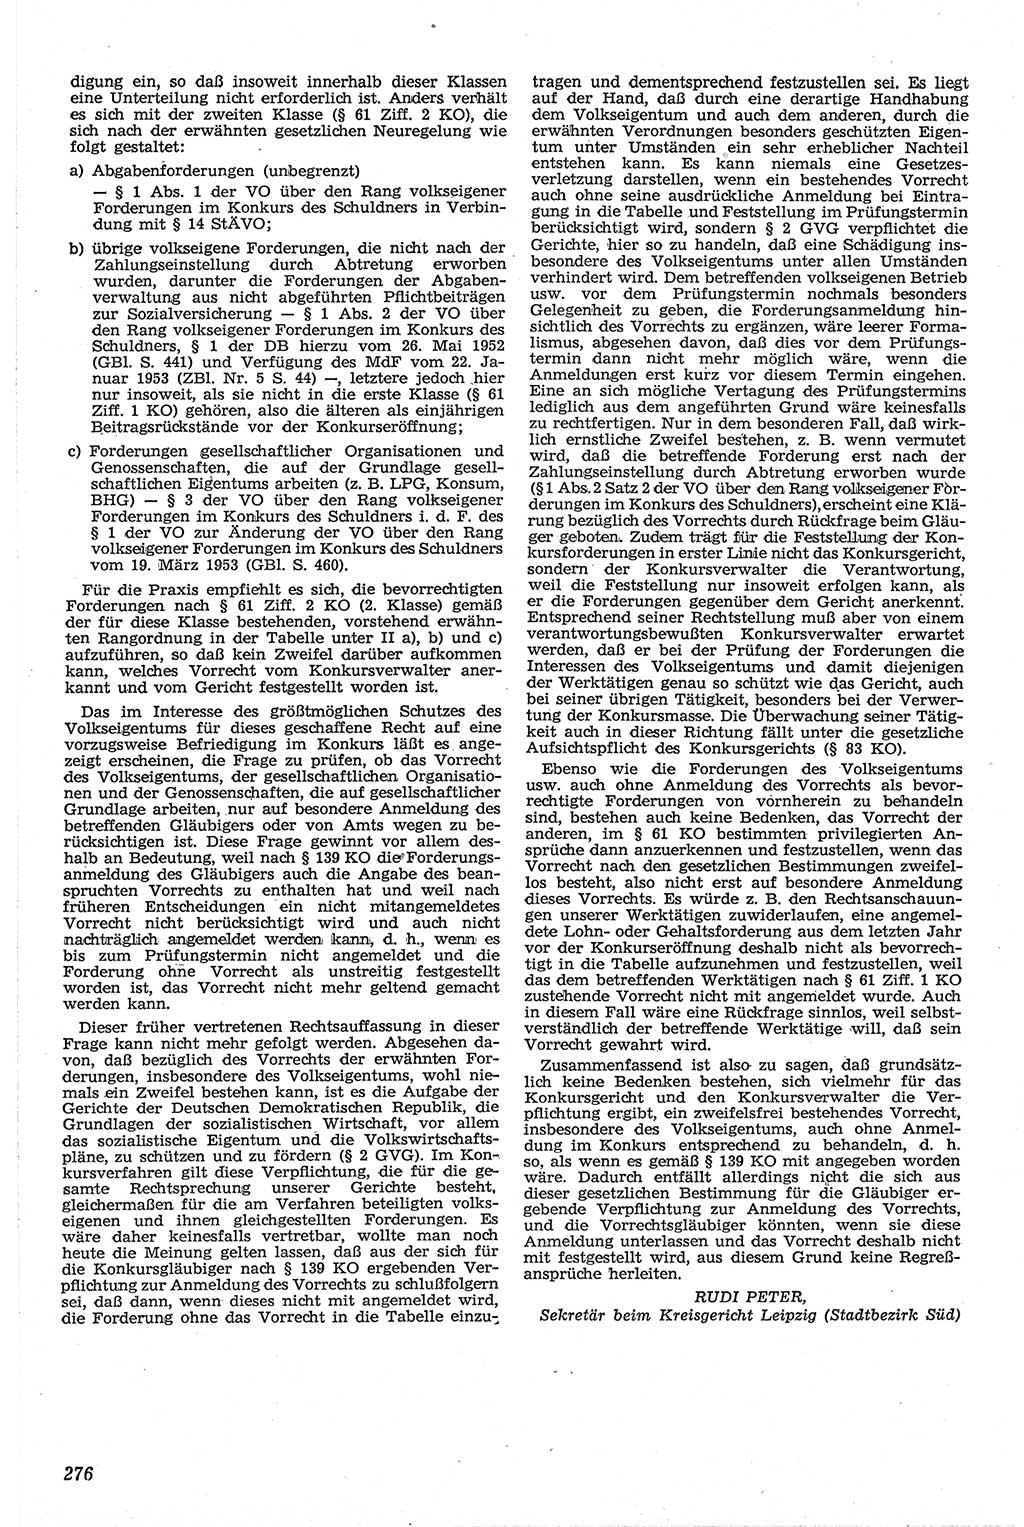 Neue Justiz (NJ), Zeitschrift für Recht und Rechtswissenschaft [Deutsche Demokratische Republik (DDR)], 13. Jahrgang 1959, Seite 276 (NJ DDR 1959, S. 276)